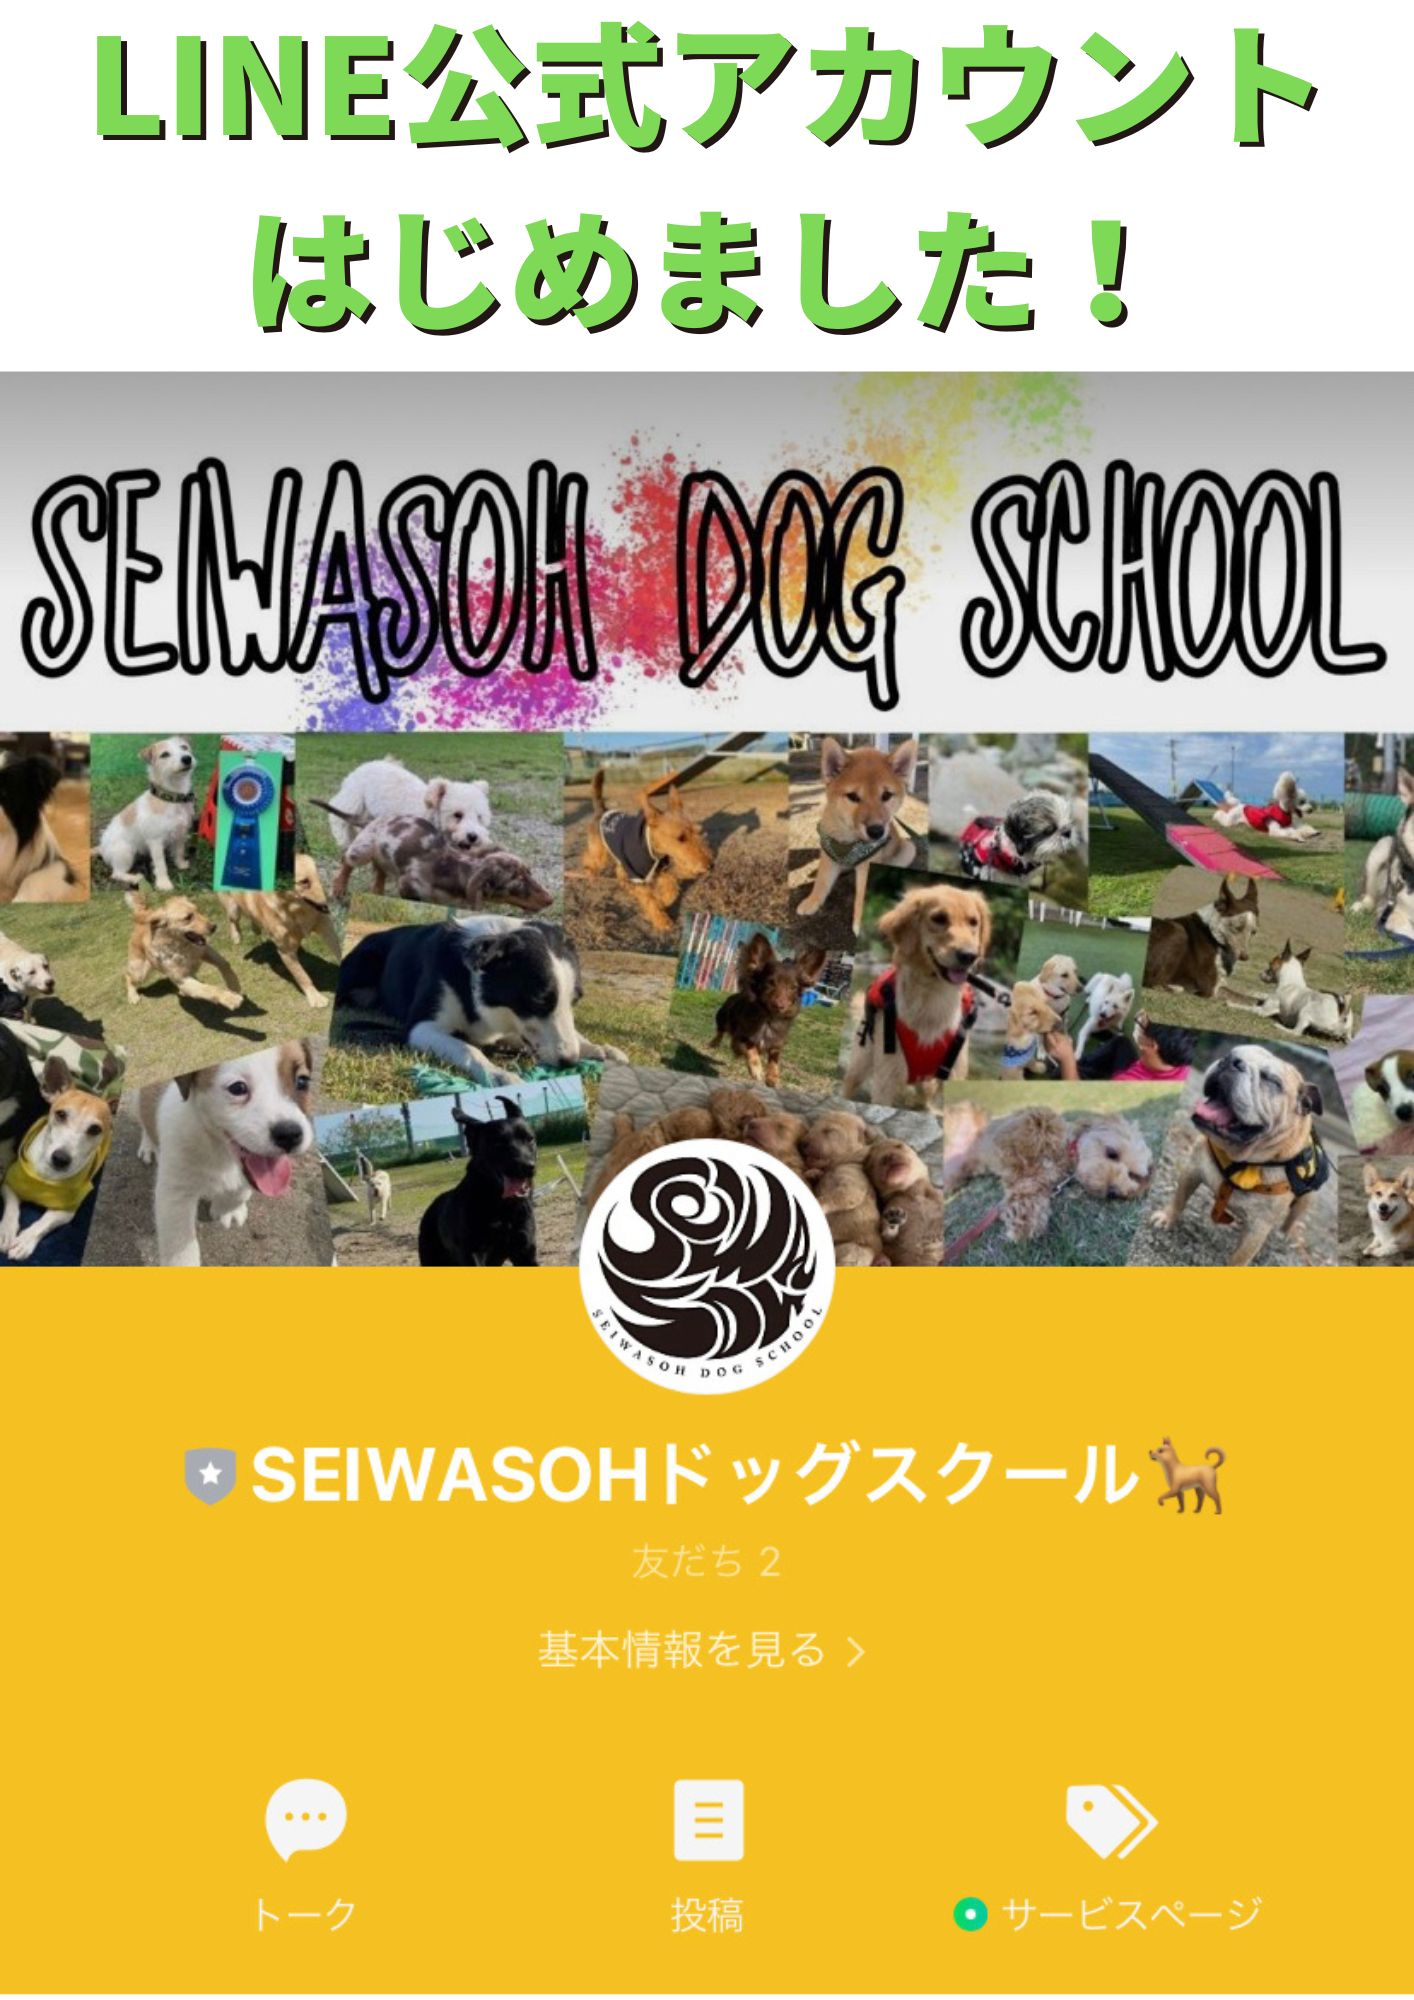 SEIWASOHドッグスクールLINE公式アカウントはじめました!!